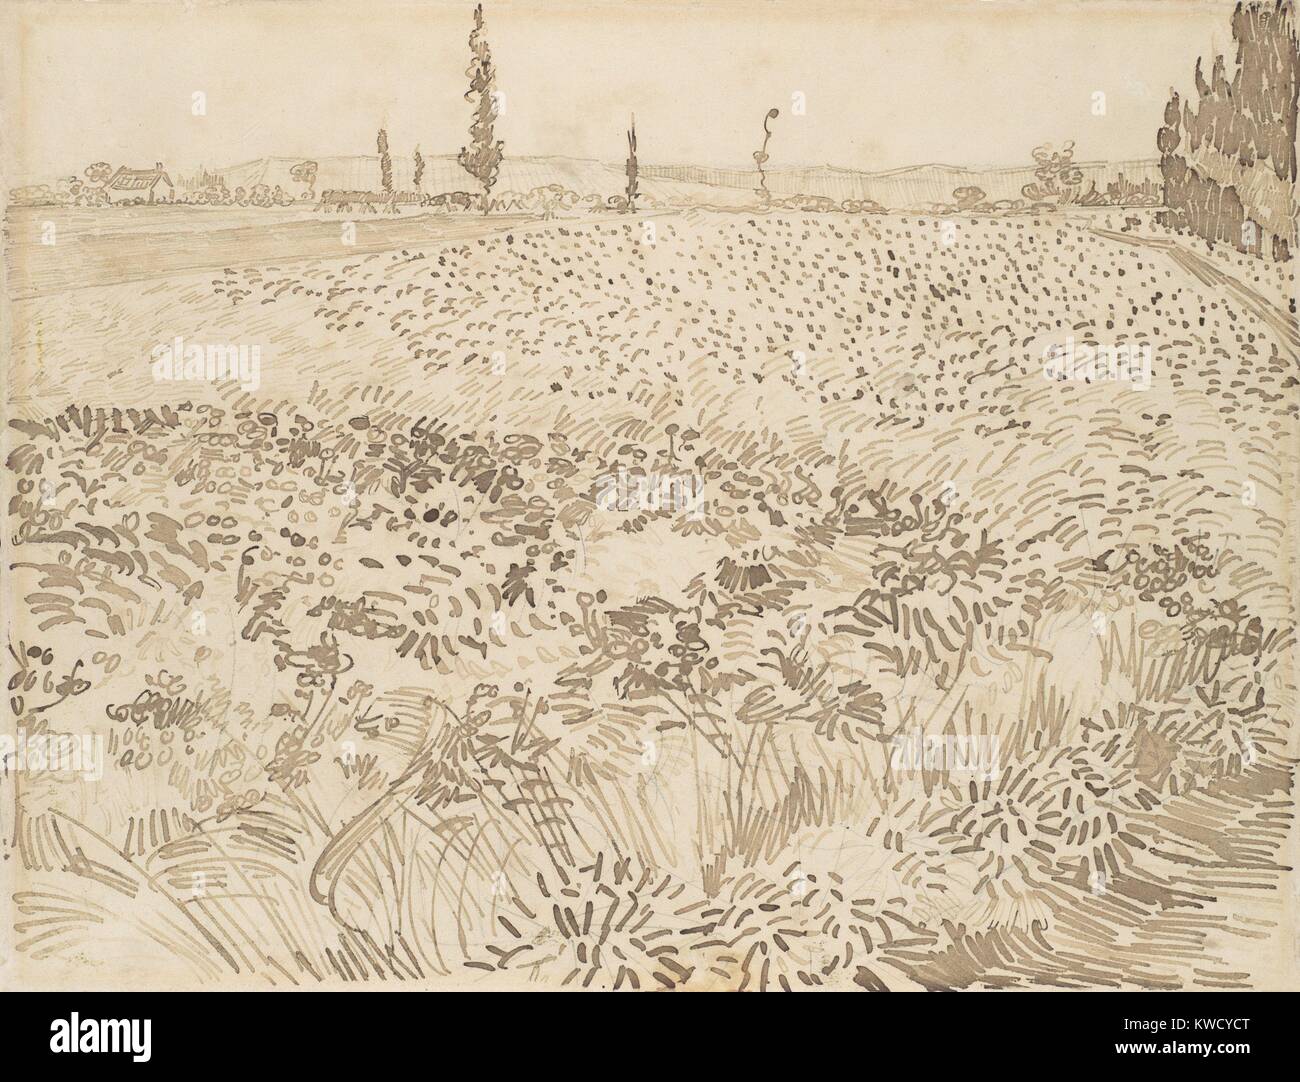 Weizenfeld, von Vincent Van Gogh, 1888, Dutch Post-Impressionist reed Stift über graphit zeichnung. Die Zeichnung ist kleiner als die illusionistischen Raum zurückzieht (BSLOC 2017 5 58) Stockfoto